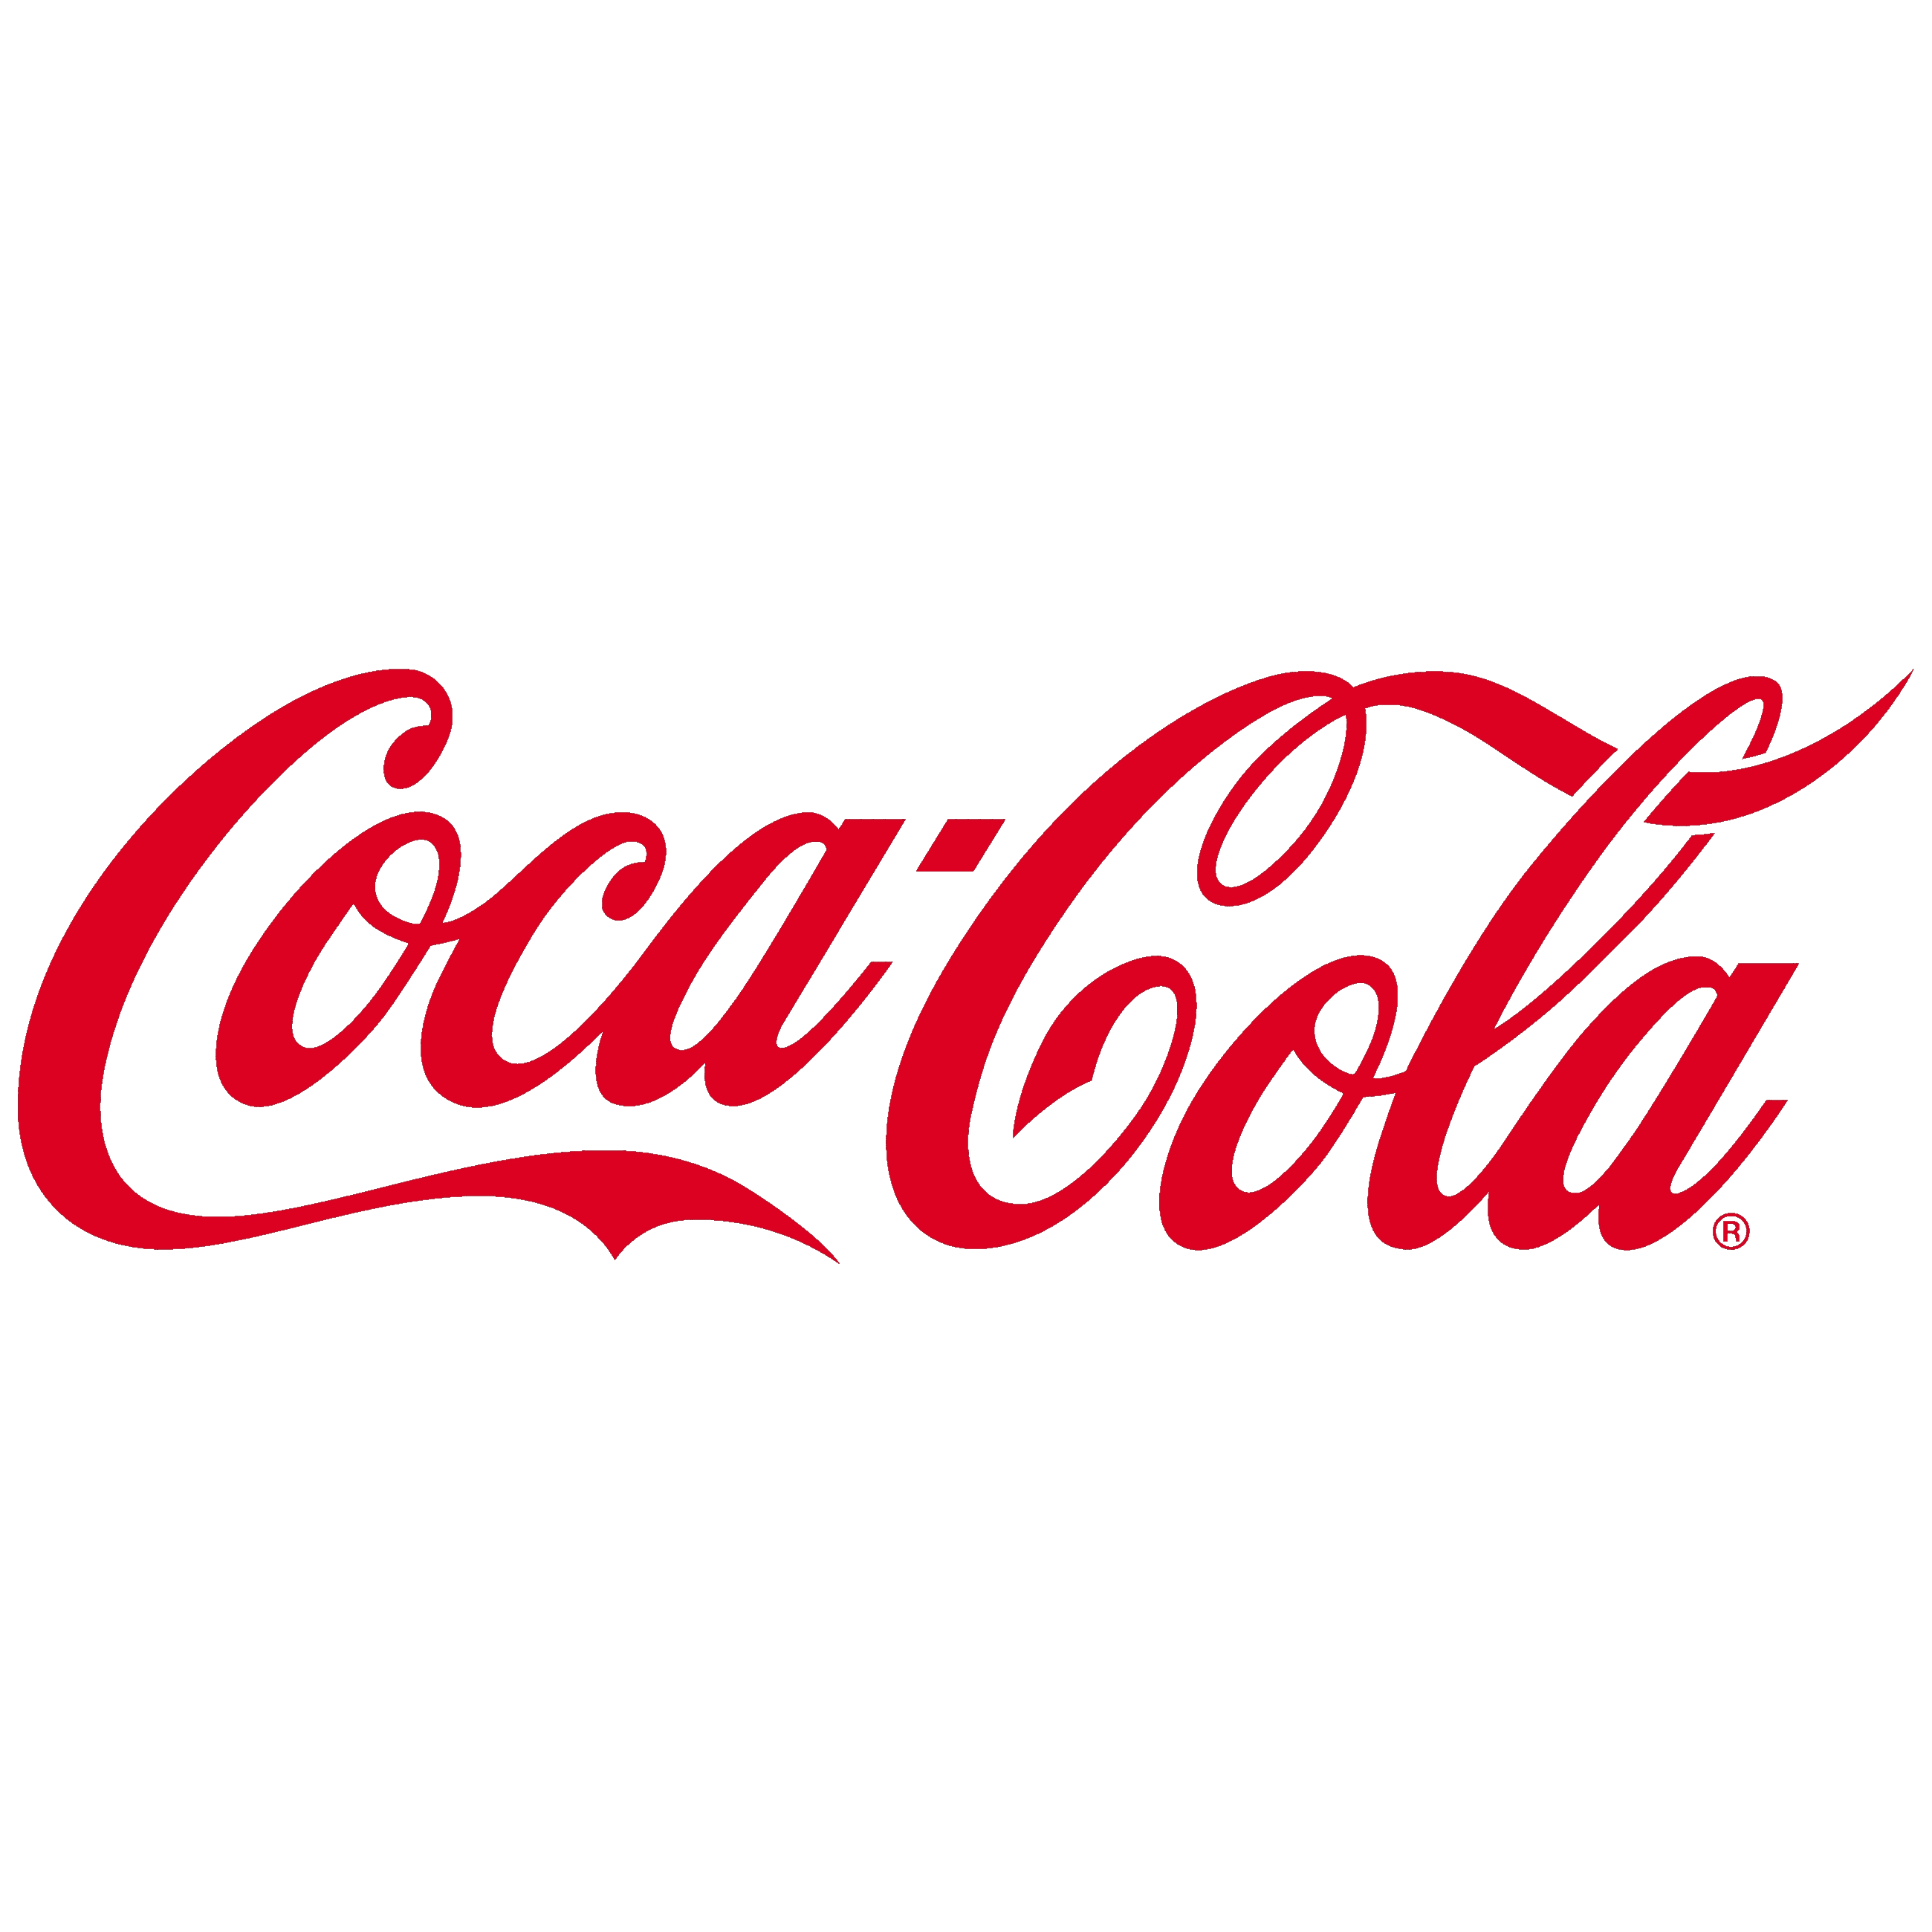 Coca Cola Transparent Clipart